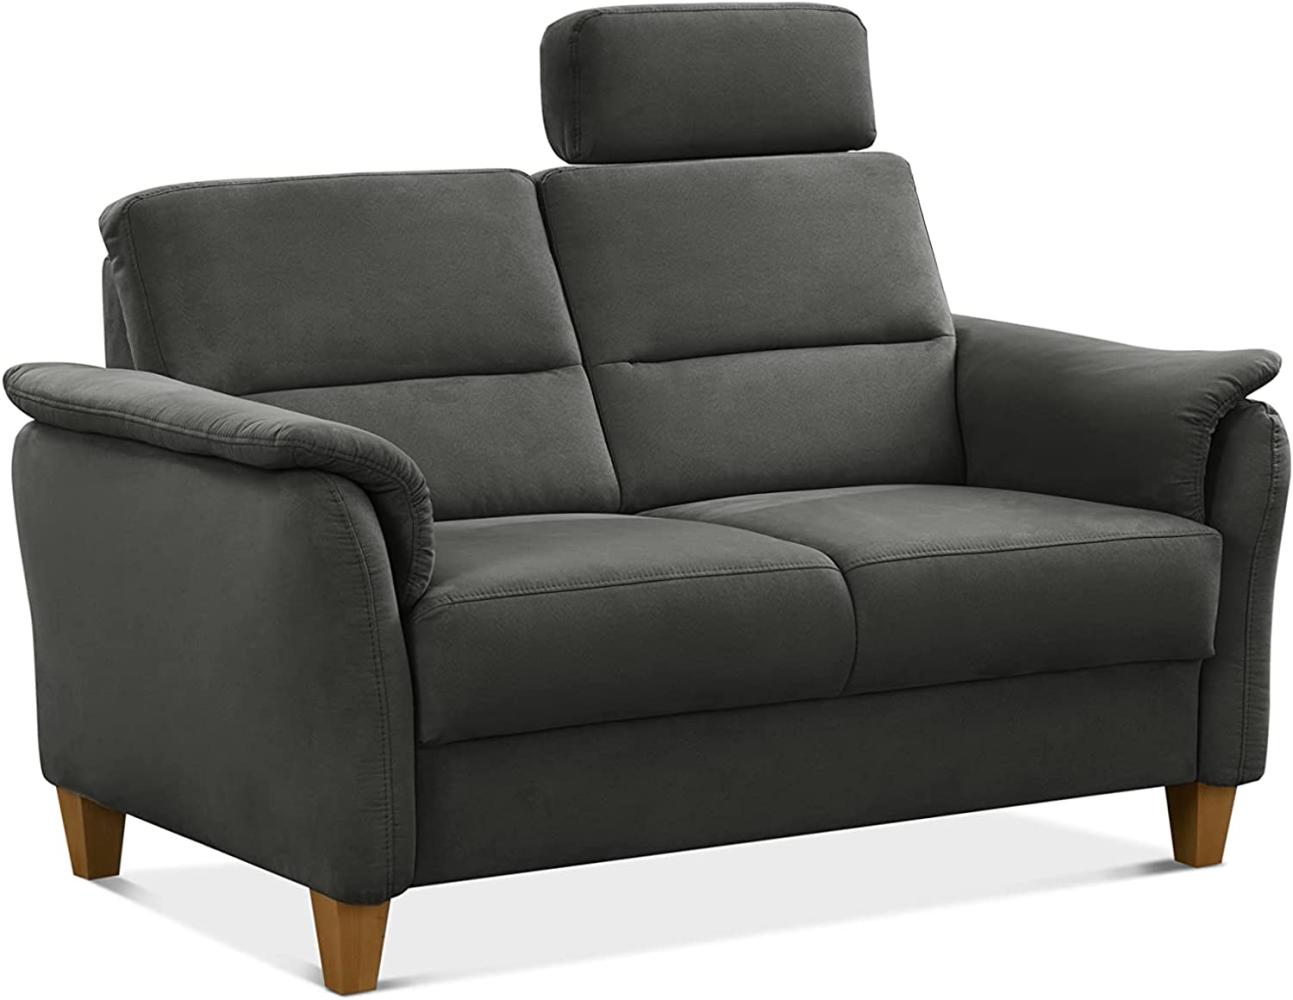 CAVADORE 2er-Sofa Palera mit Federkern / Kompakte Zweisitzer-Couch im Landhaus-Stil / inkl. 1 Kopfstütze / 149 x 89 x 89 / Mikrofaser, Grau Bild 1